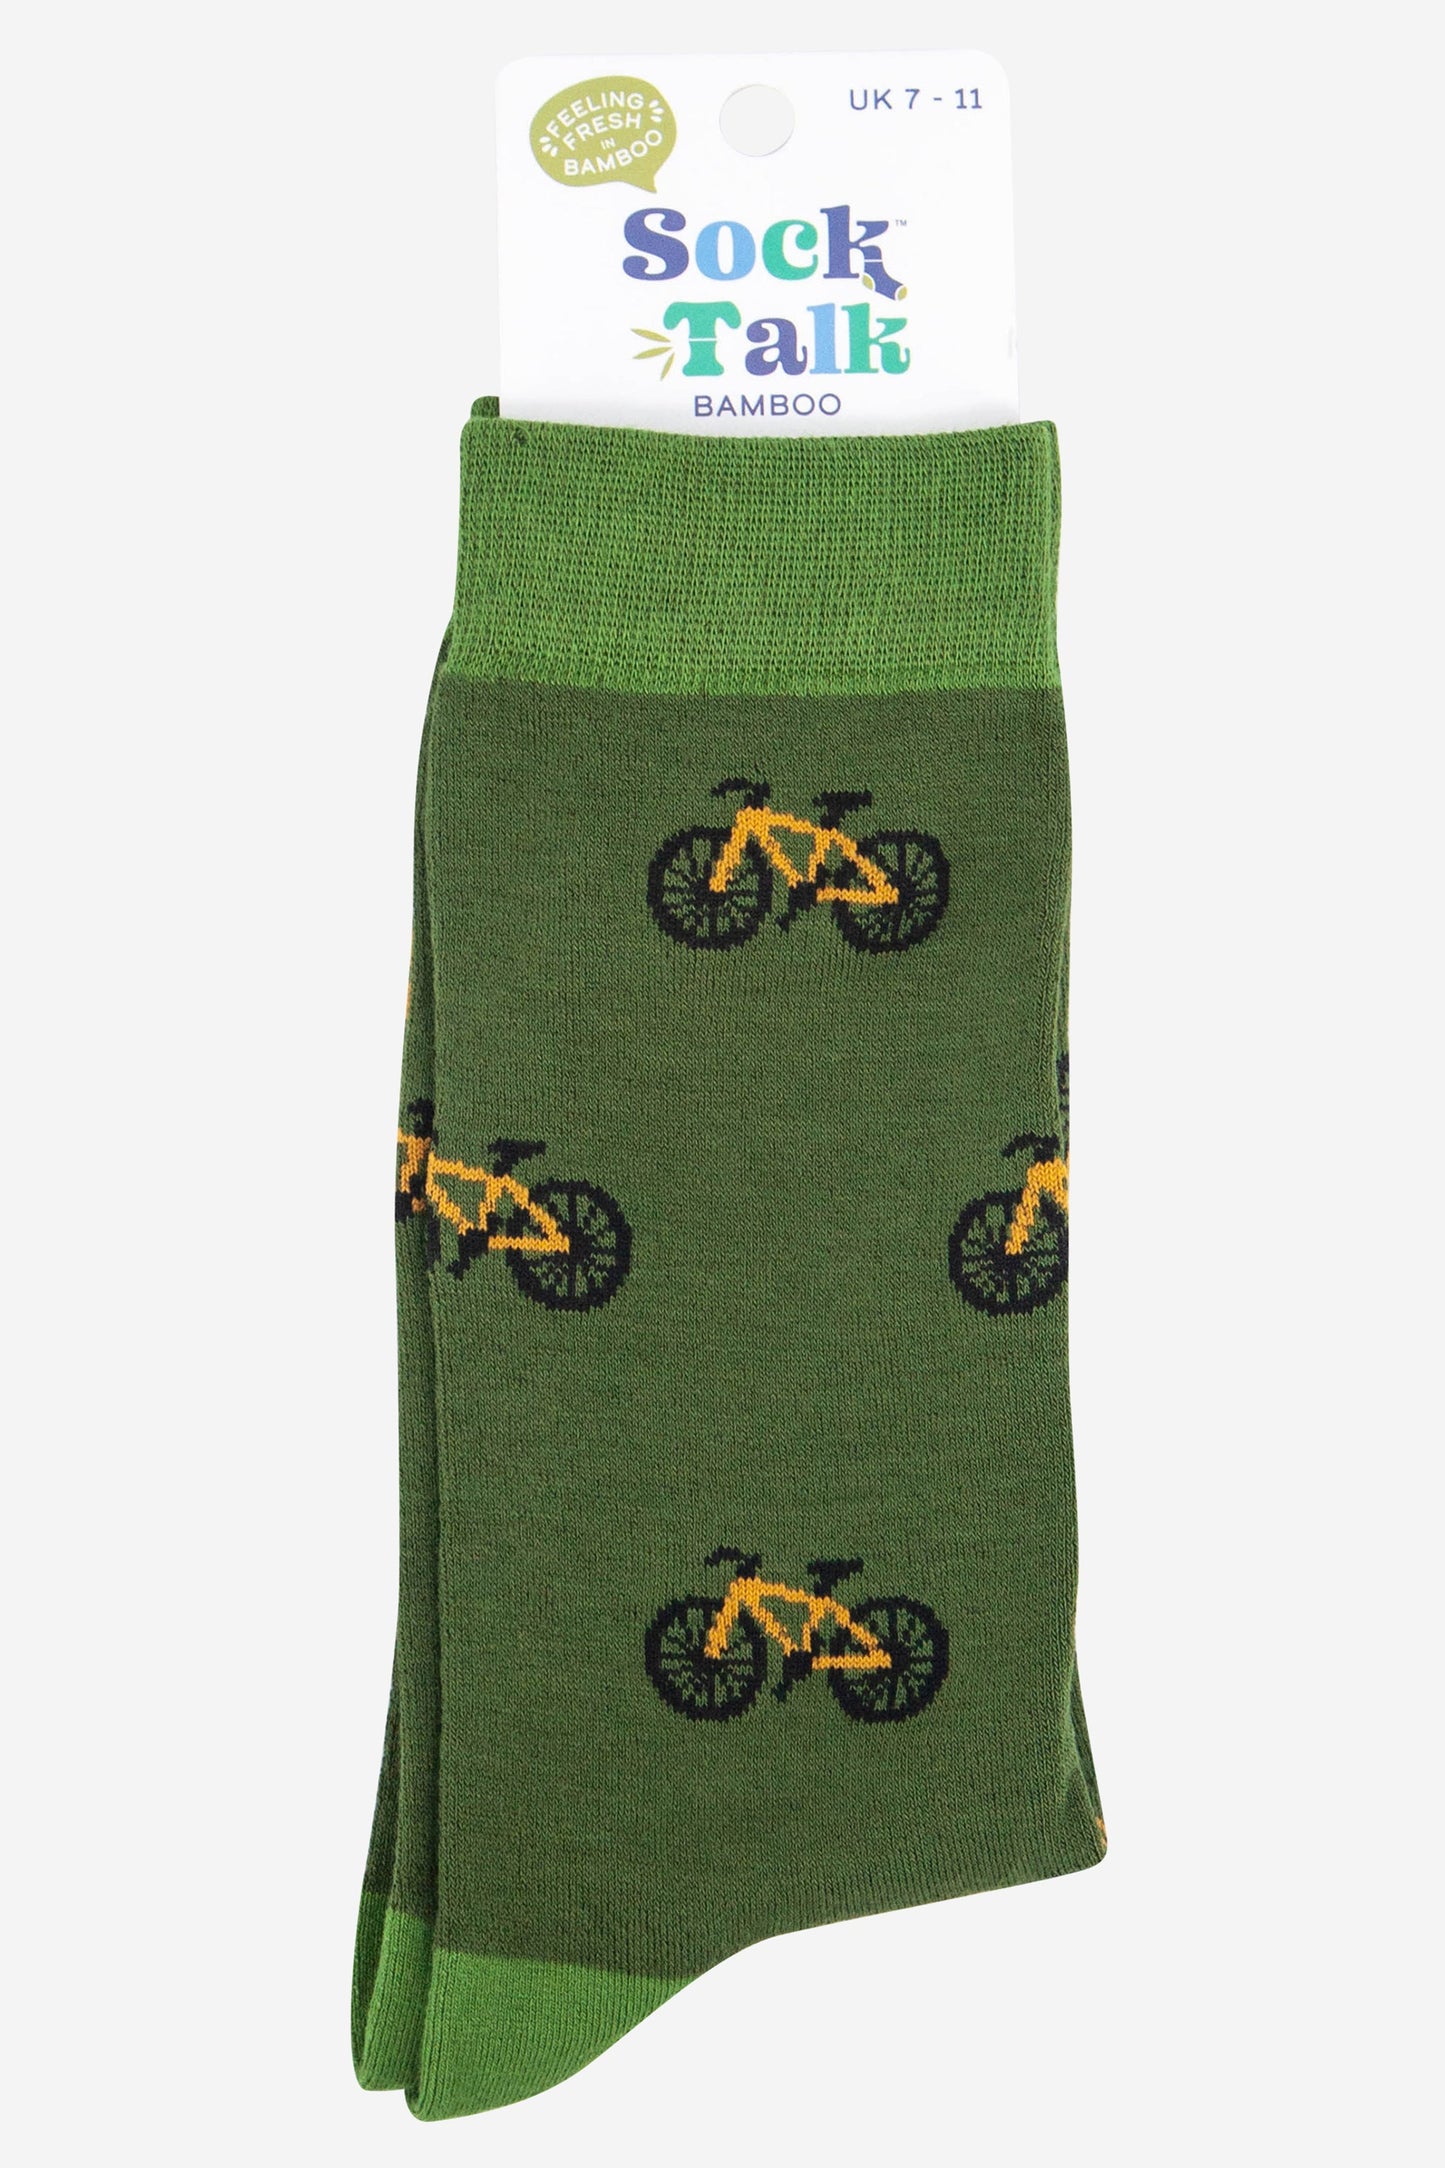 mens green mountain bike novelty socks uk size 7-11